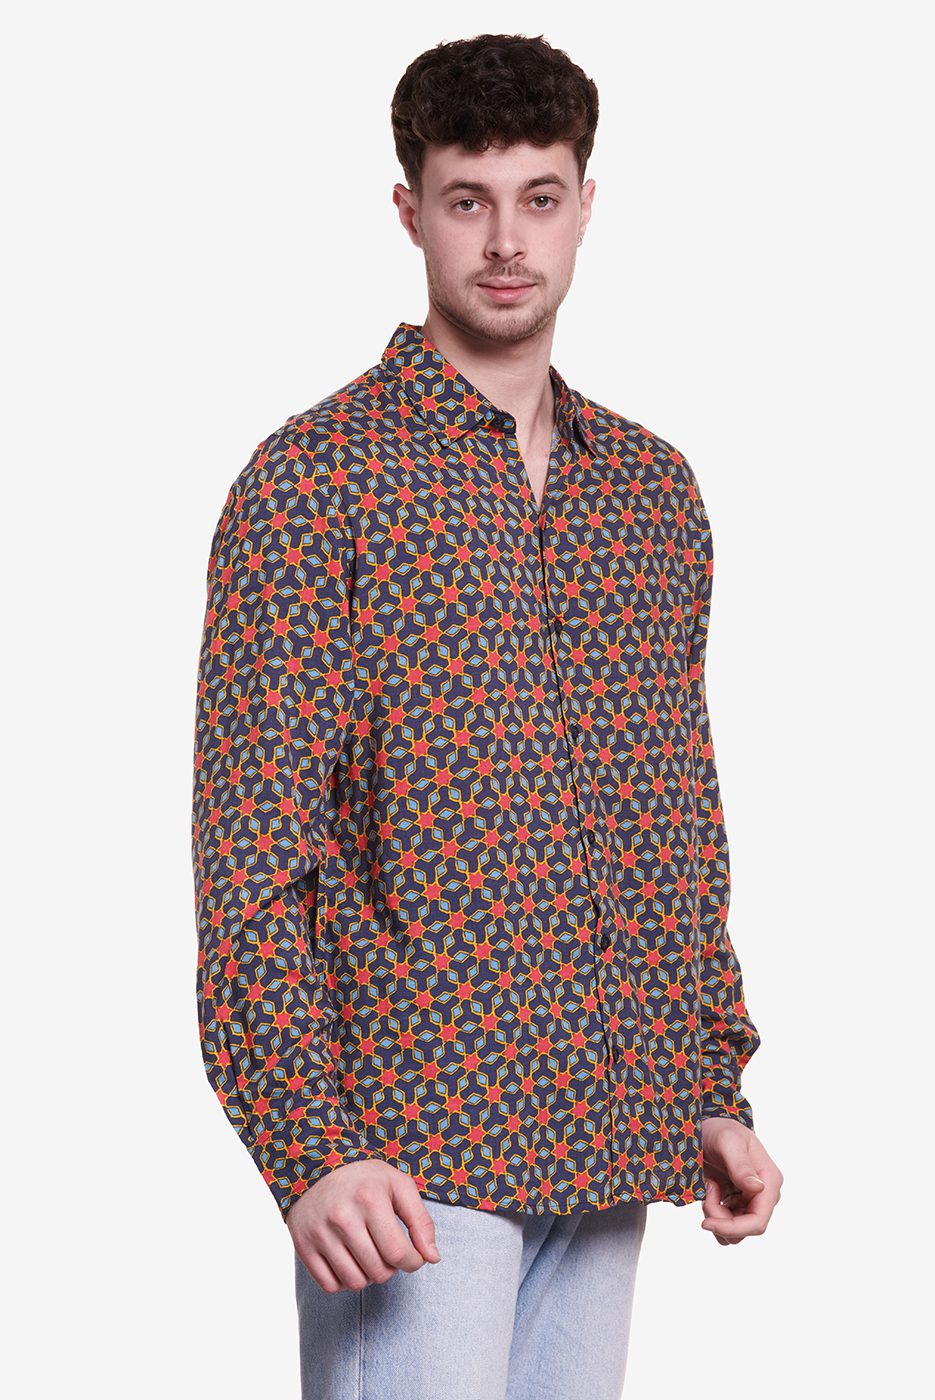 Camisa de hombre elegante y moderna con estampado estilo mudéjar